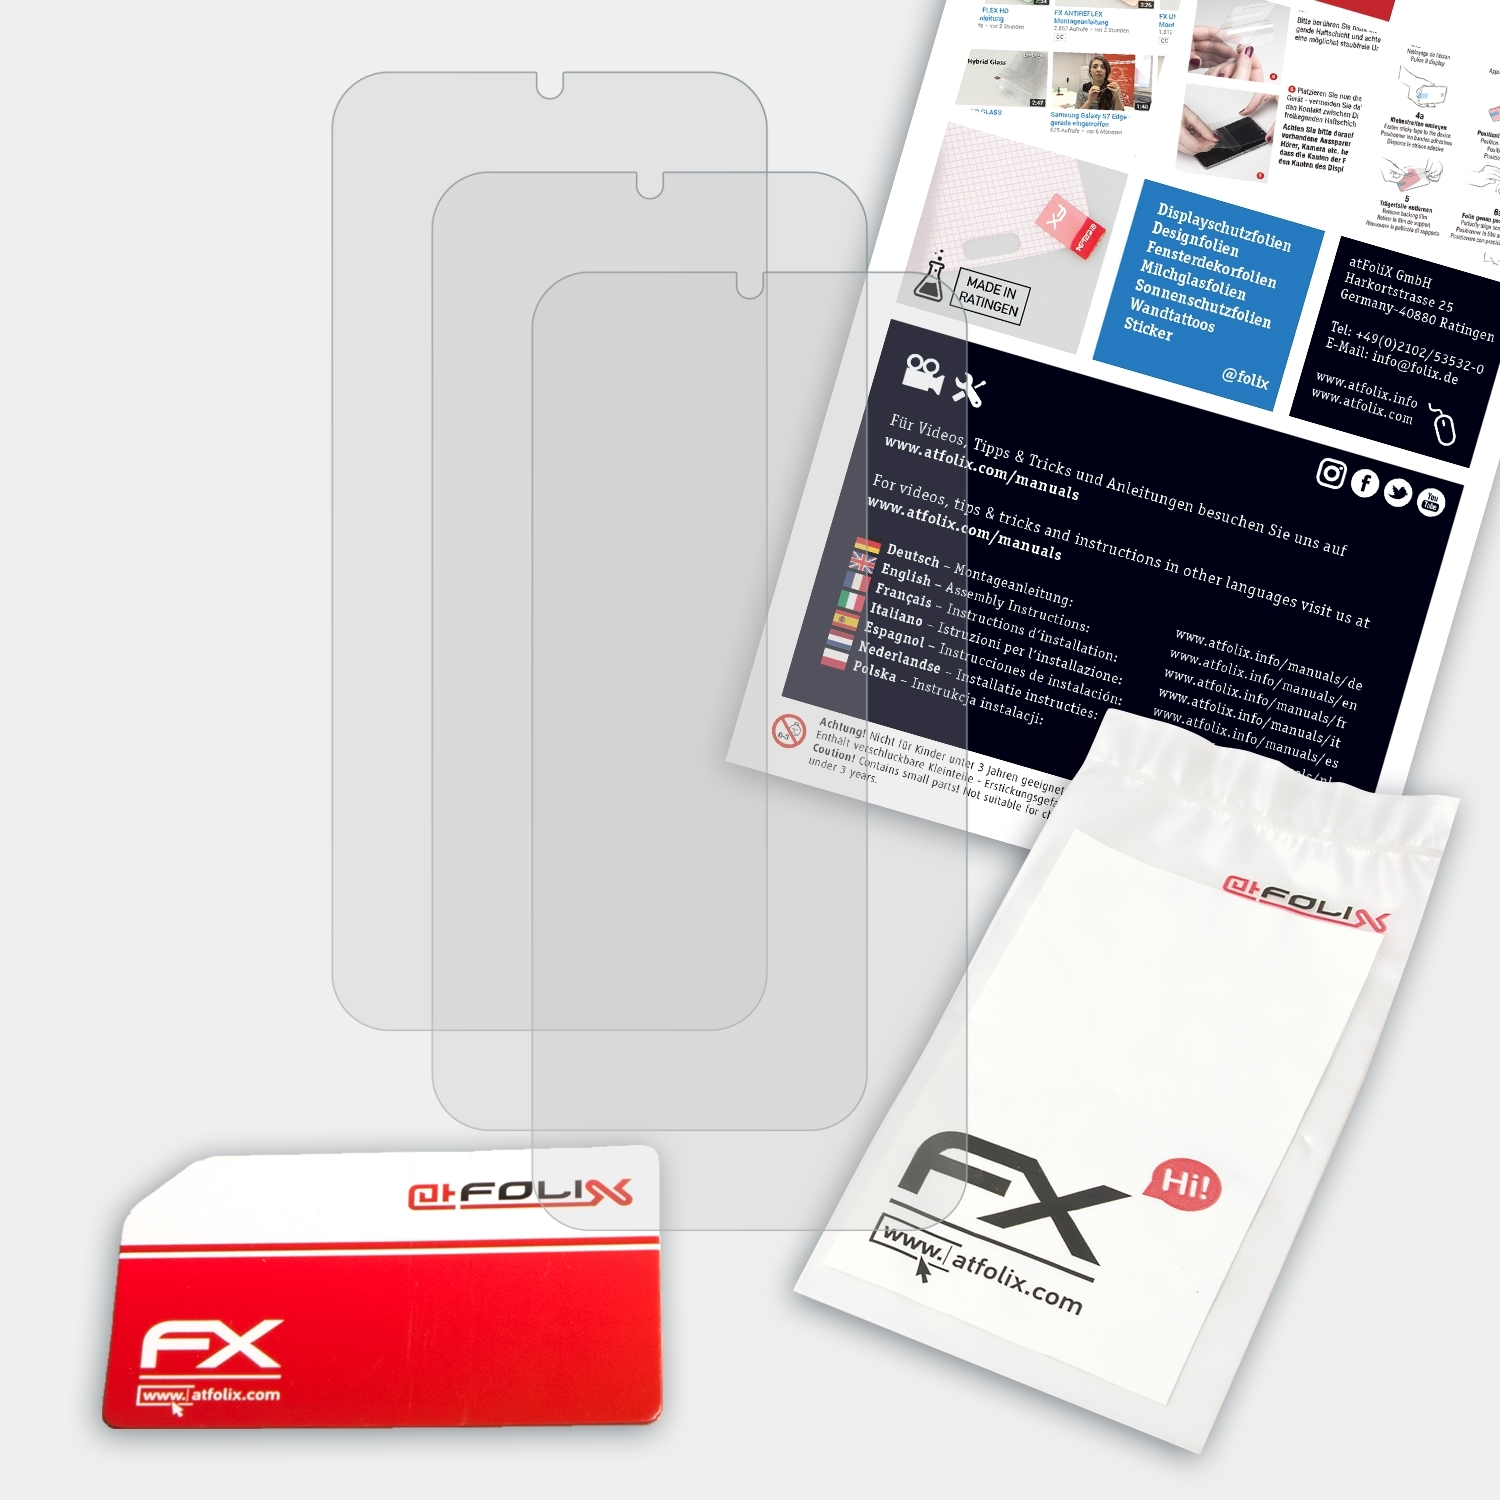 FX-Antireflex 3x ATFOLIX 3.2) Nokia Displayschutz(für